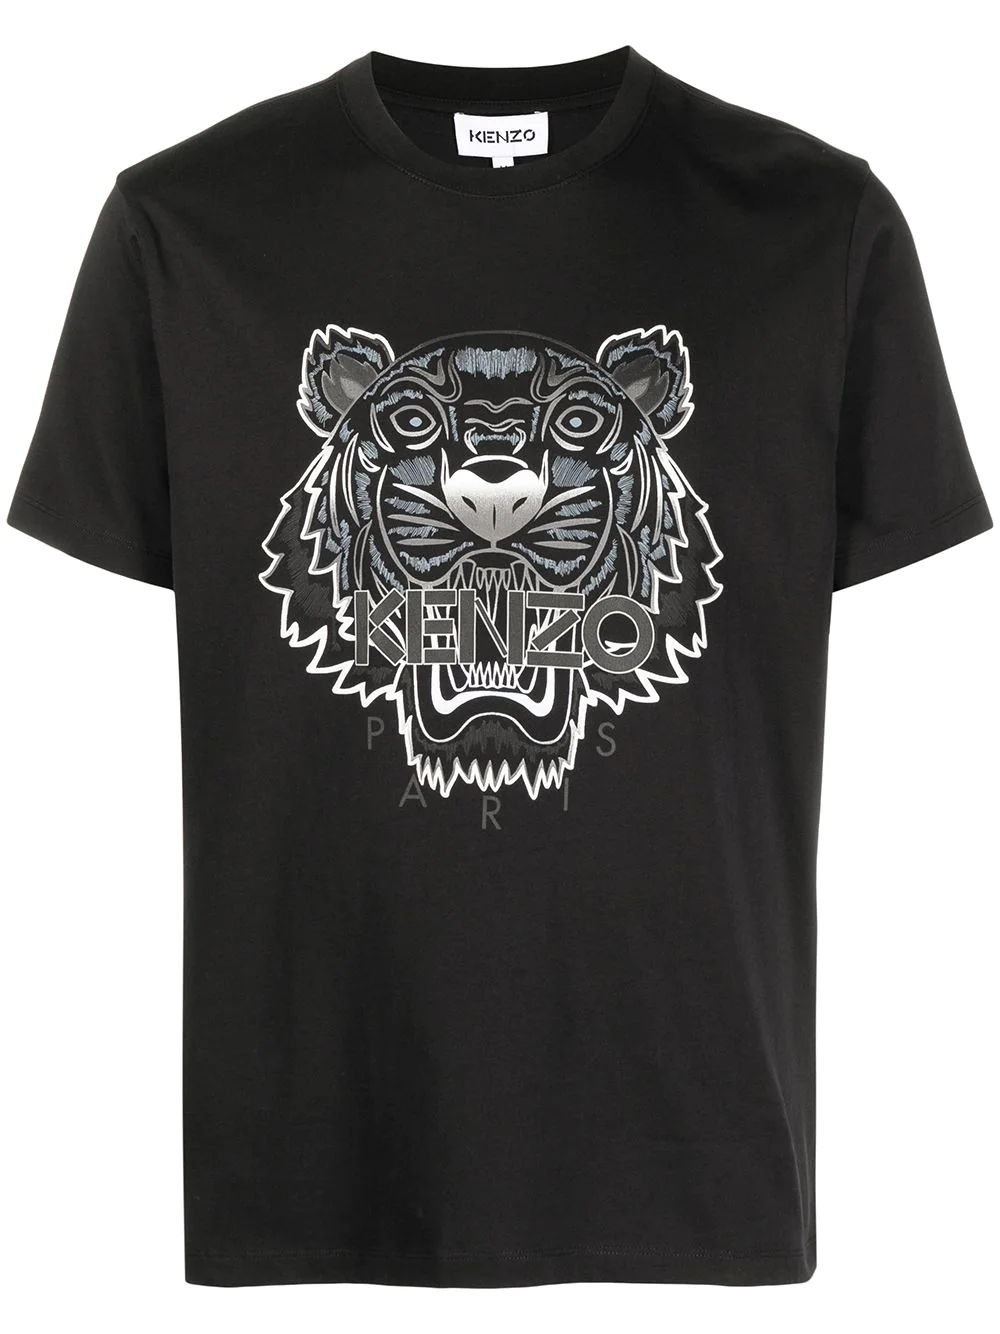 Kenzo Tiger T Shirt Black Chrome – Klay UK